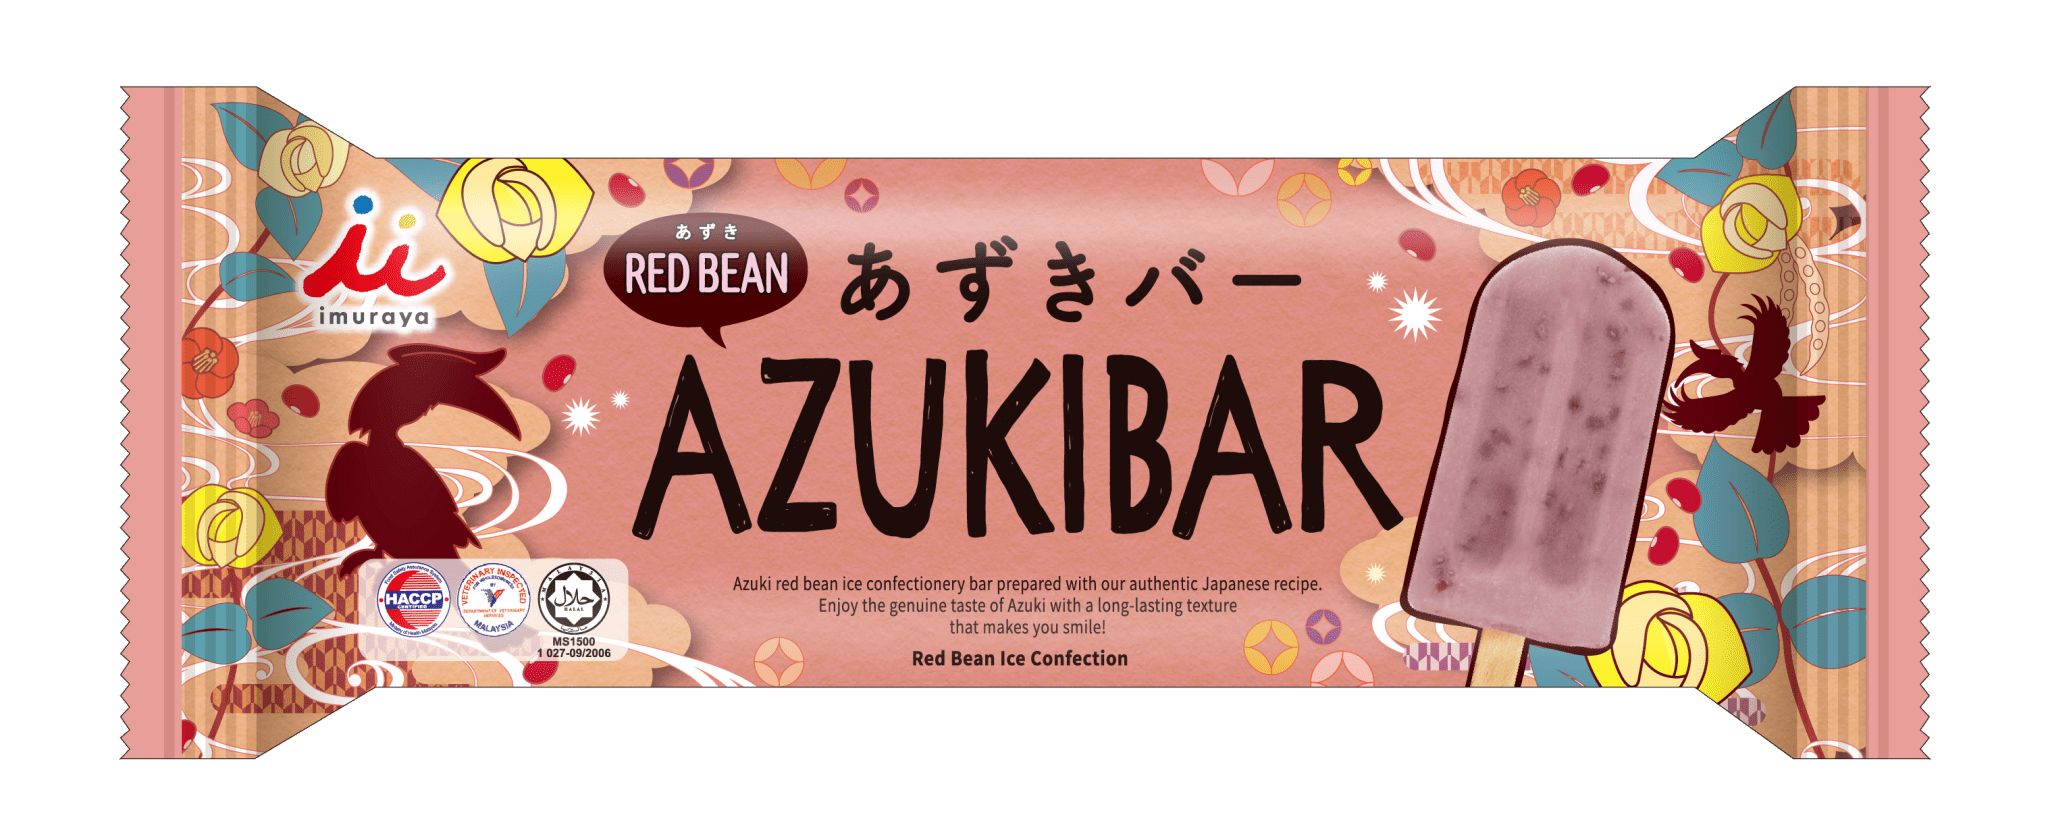 IMURAYA AZUKIBAR RED BEAN HALAL - Tokyo Fresh Direct